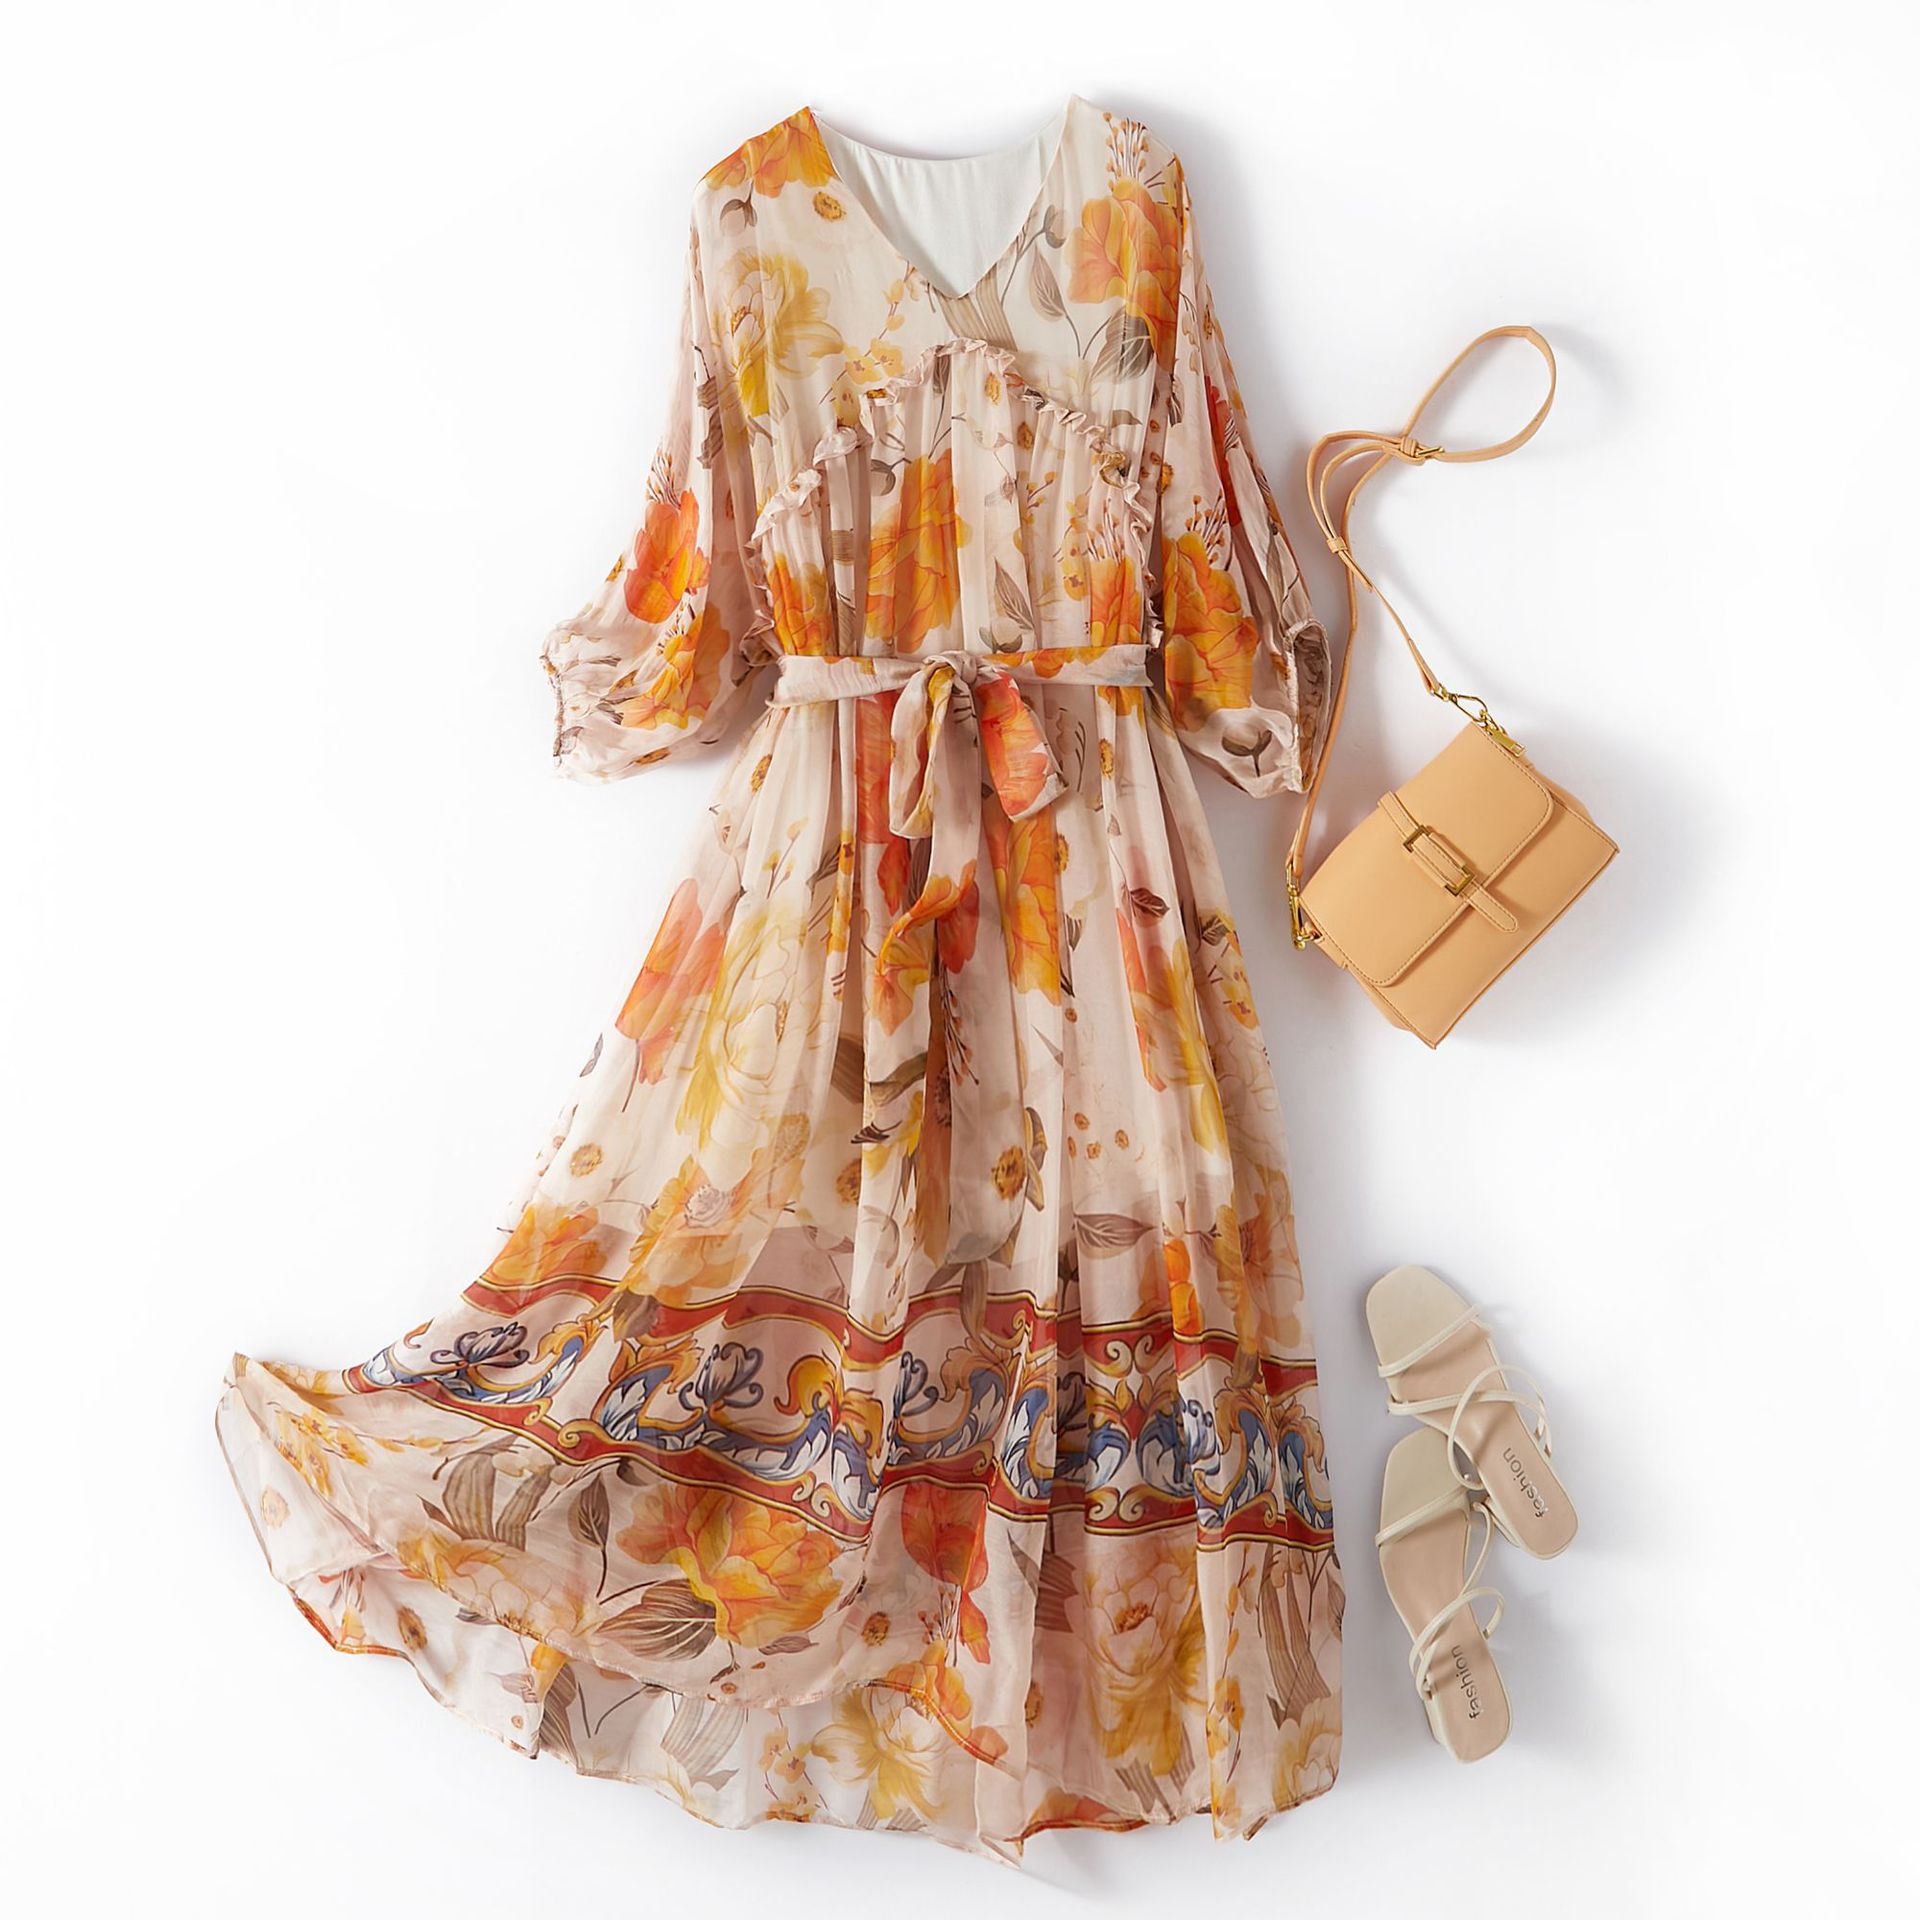 (Mới) Mã H8346 Giá 2640K: Váy Đầm Liền Thân Dáng Dài Nữ Shtdge Hàng Mùa Hè Họa Tiết Hoa Thời Trang Nữ Chất Liệu Lụa Tơ Tằm G06 Sản Phẩm Mới, (Miễn Phí Vận Chuyển Toàn Quốc).